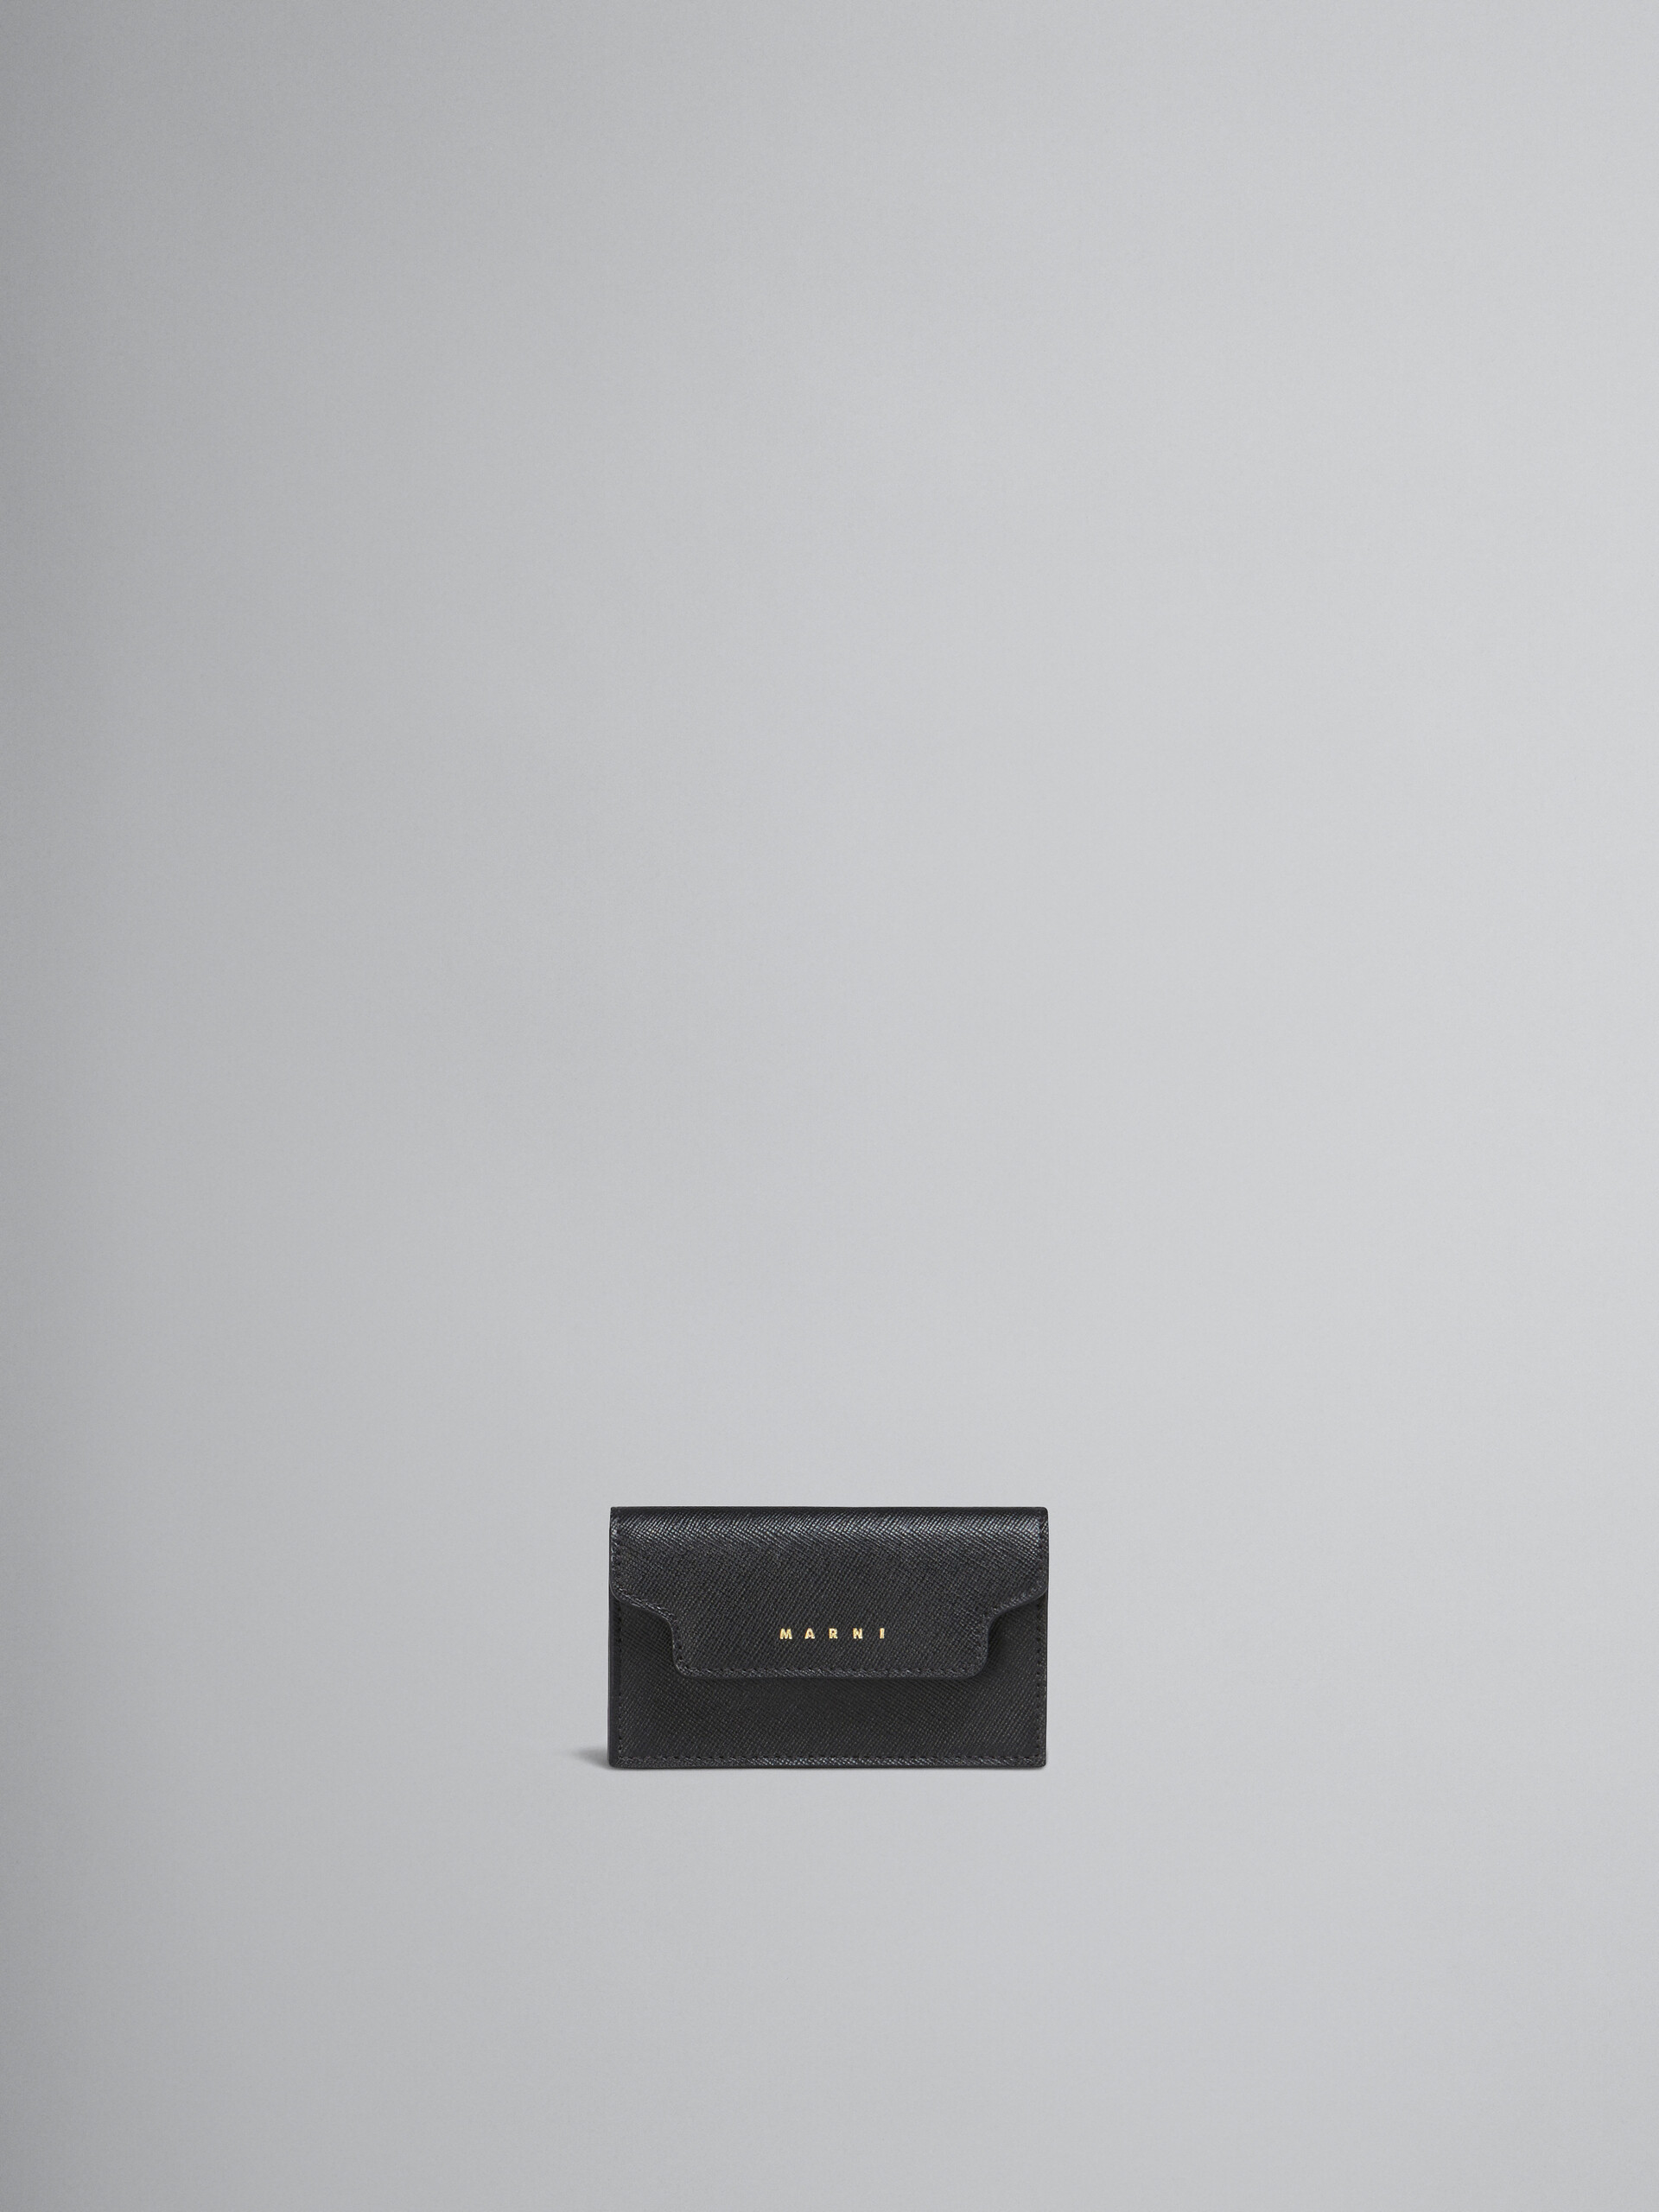 Étui pour cartes de visite en cuir saffiano noir - Portefeuilles - Image 1